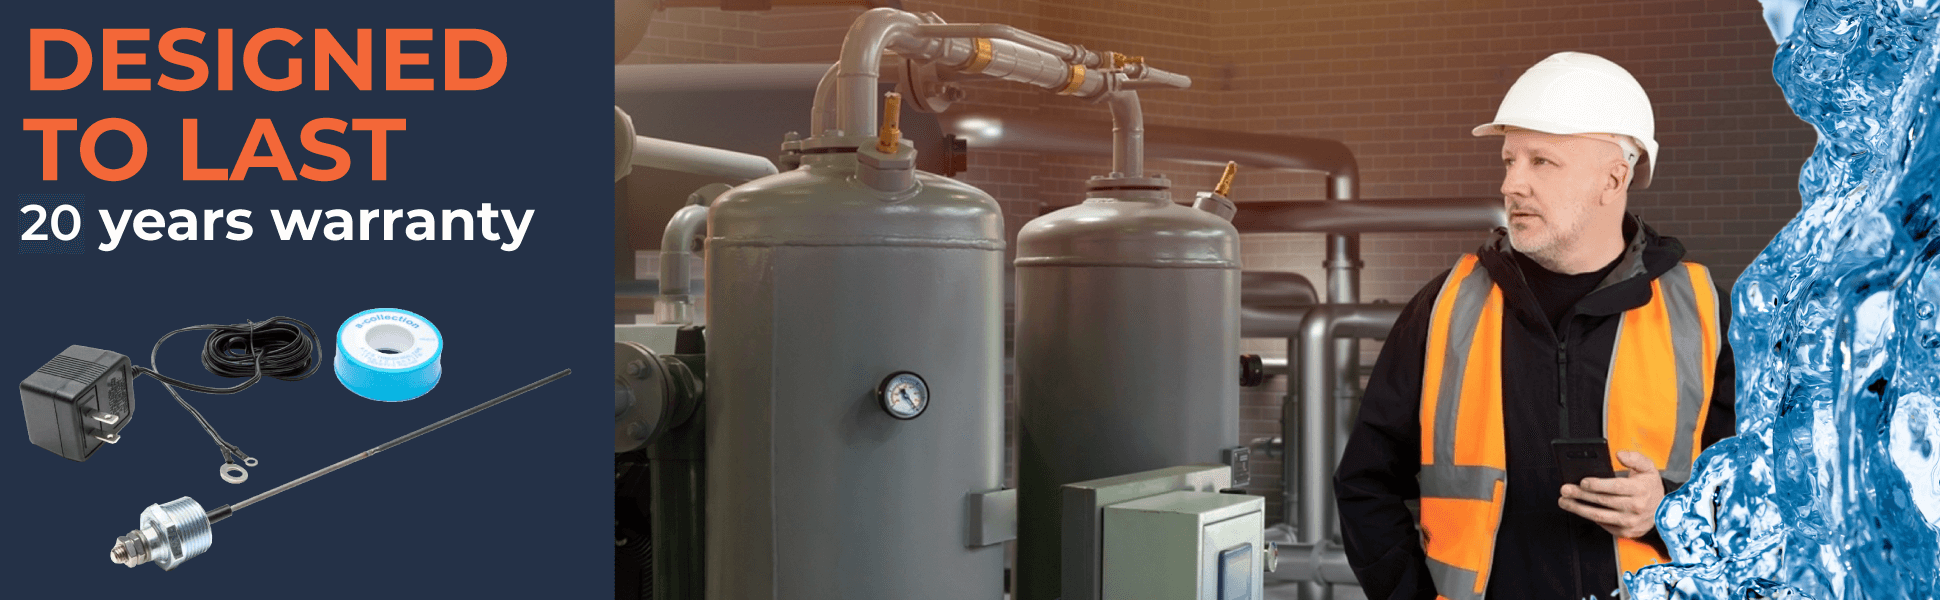 Corrosion Guard - Tie anode à puissance universelle pour chauffe-eau, 40-89 gallons, correspond à n'importe quelle marque - Adaptateur US